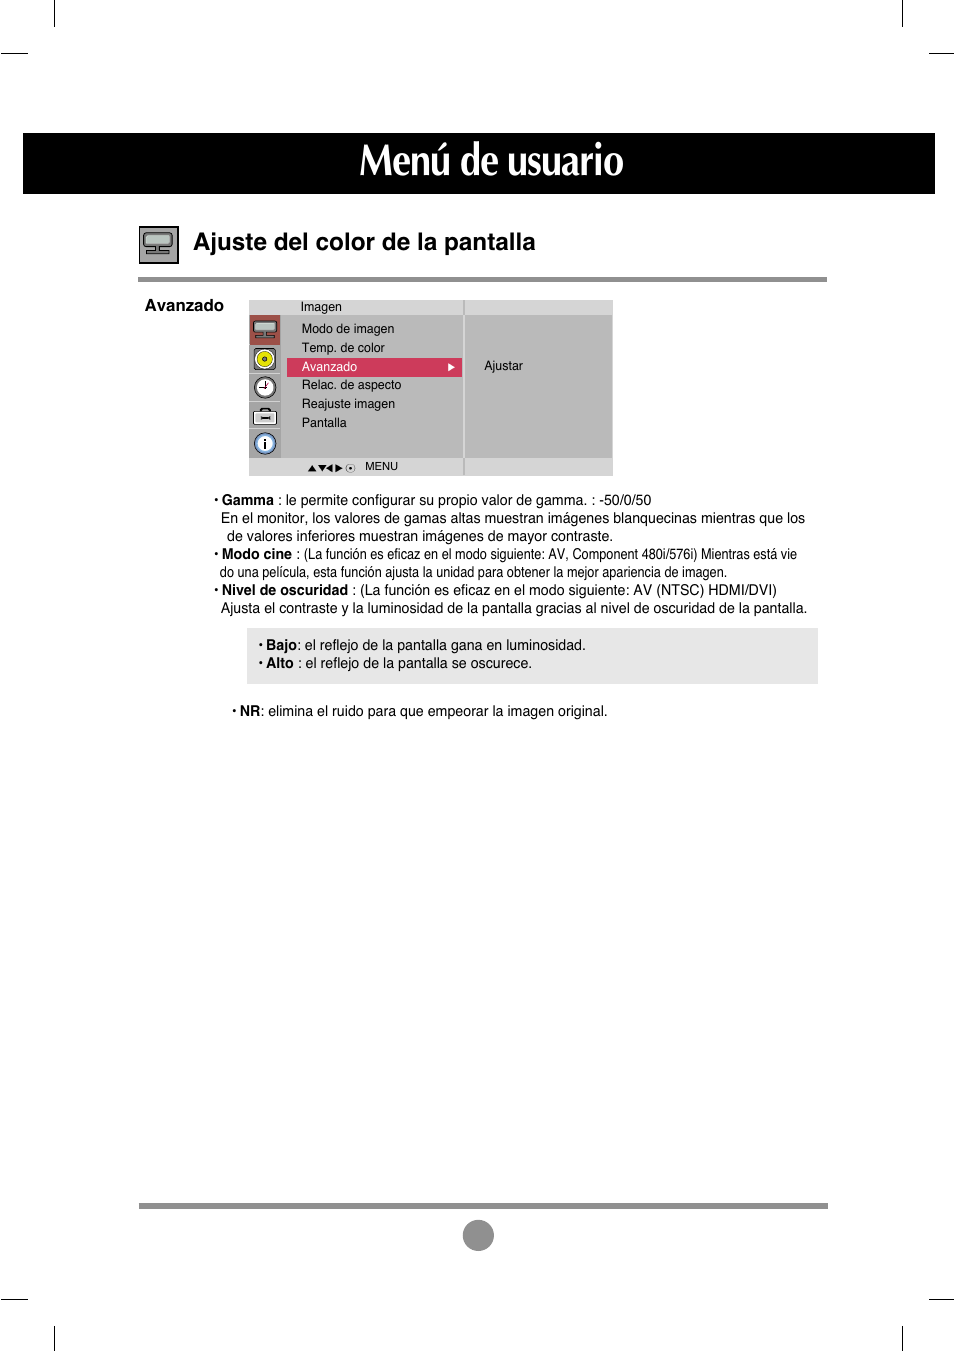 Menú de usuario, Ajuste del color de la pantalla | LG M4212C-BA User Manual | Page 24 / 67